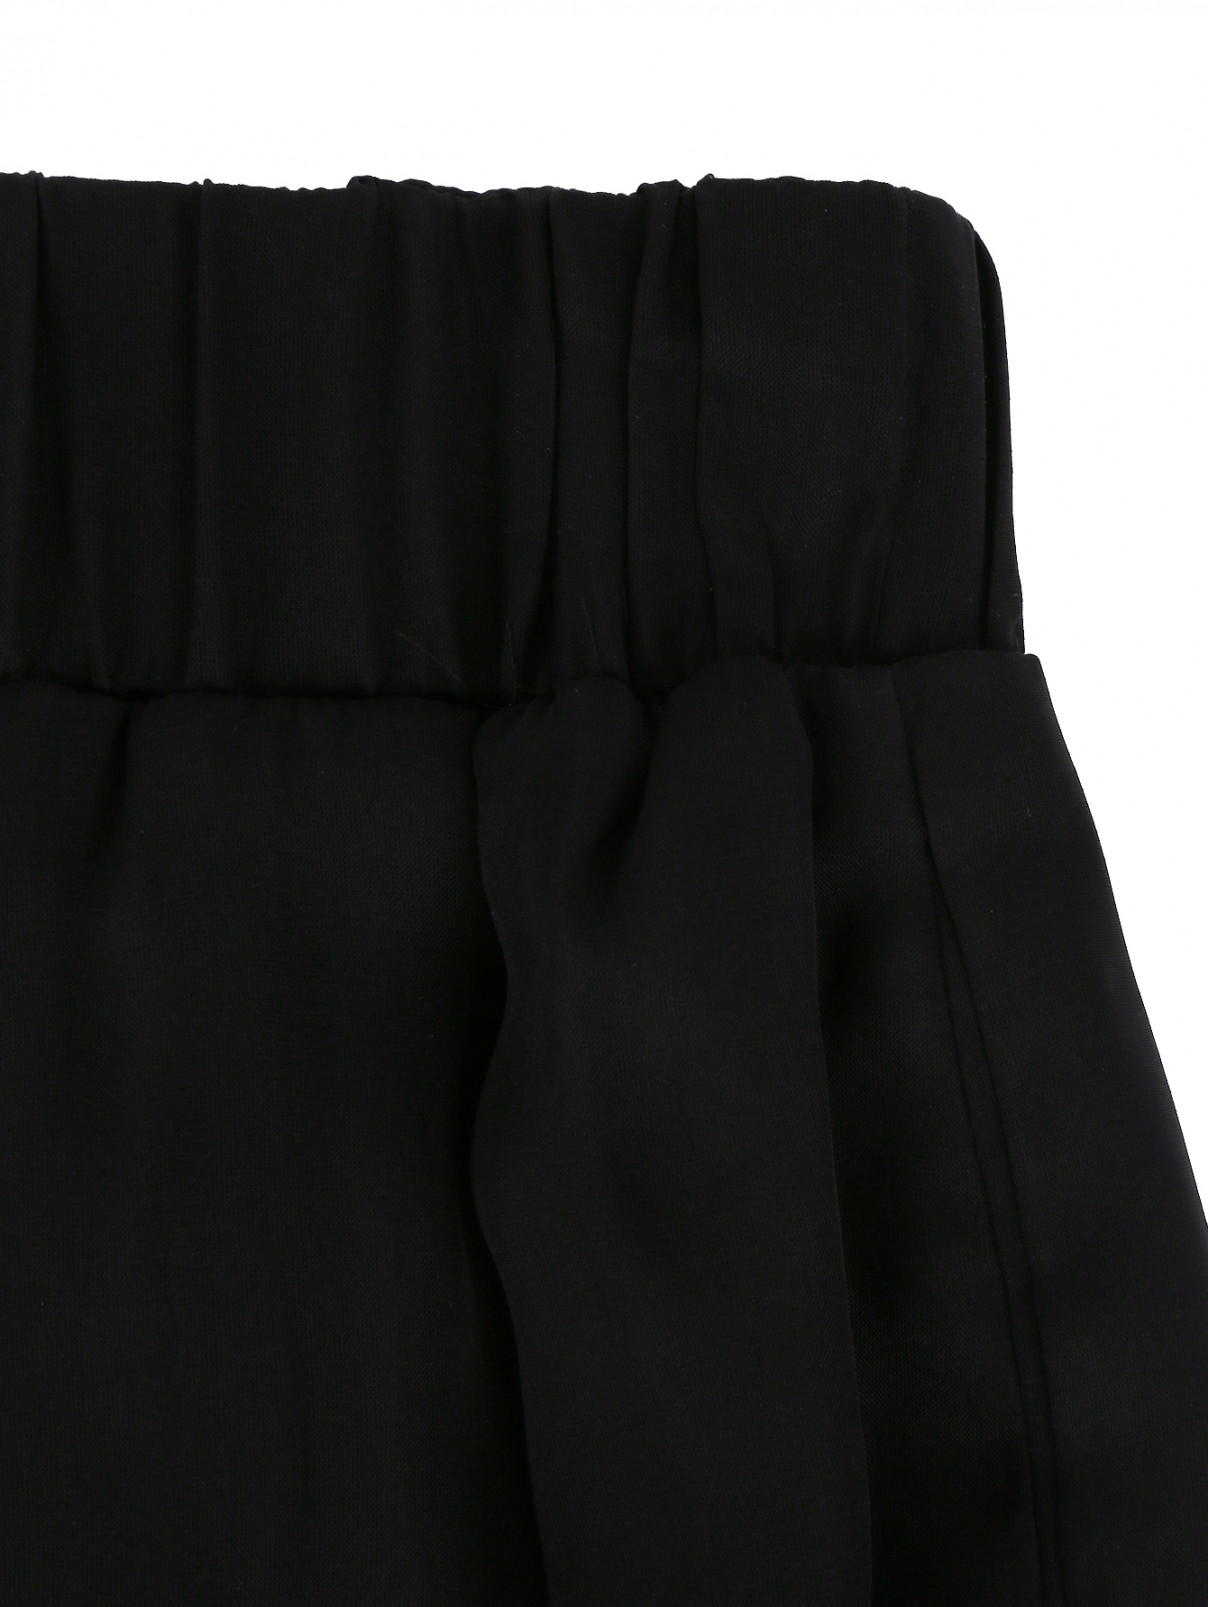 Прозрачные брюки на резинке Jay Ahr  –  Деталь  – Цвет:  Черный